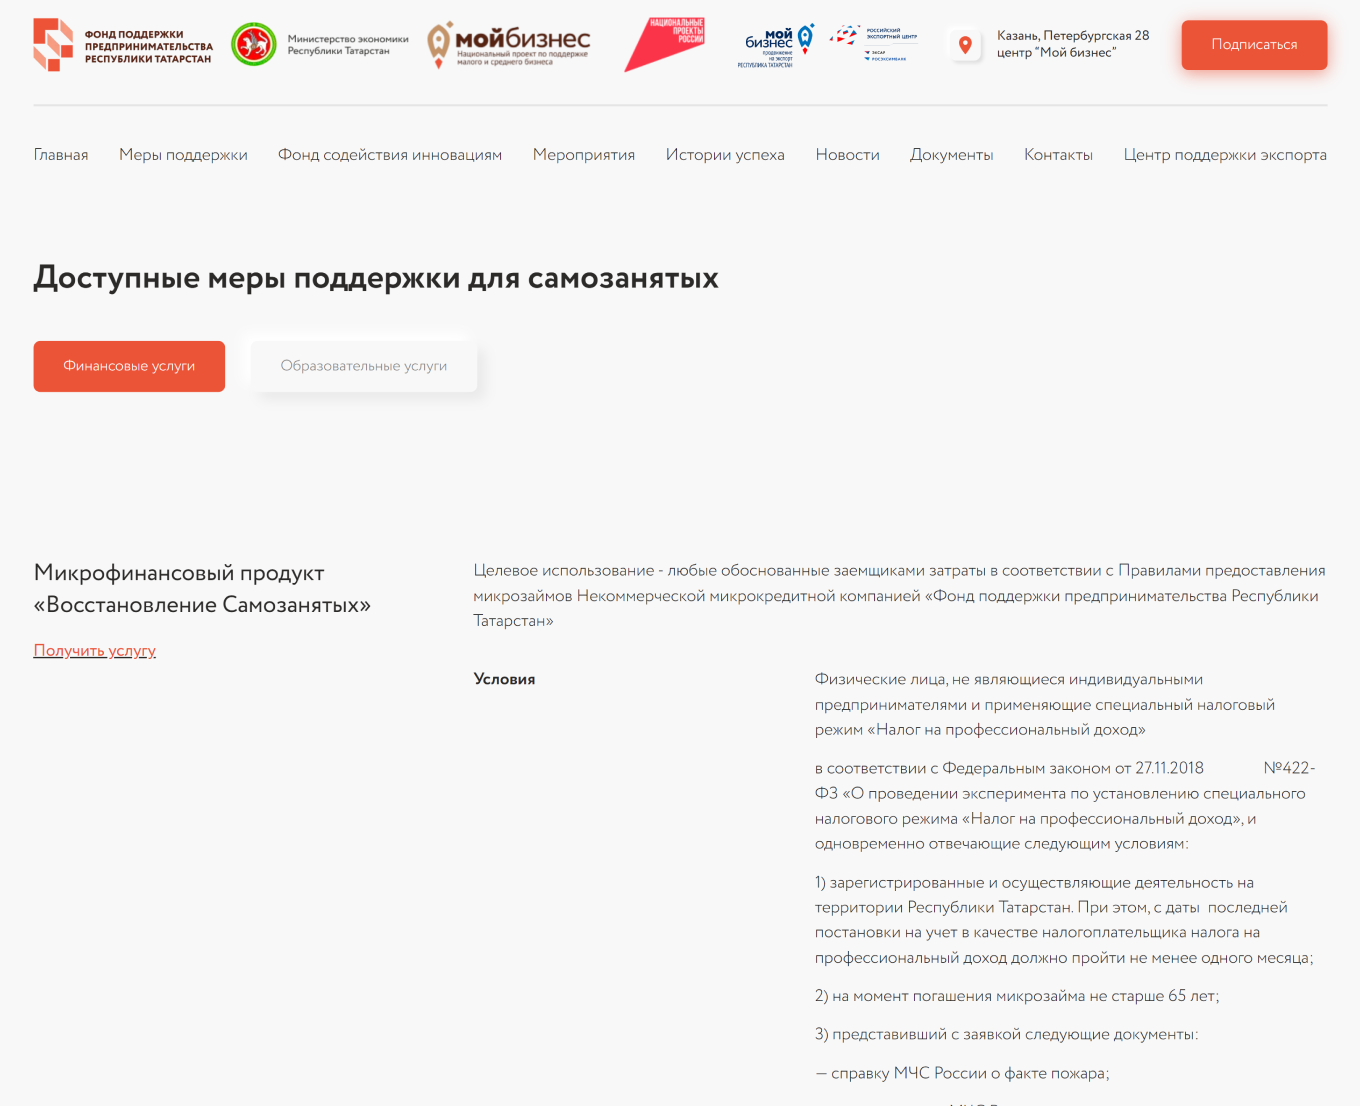 Доступные меры поддержки для самозанятых на портале «Мой бизнес» Республики Татарстан